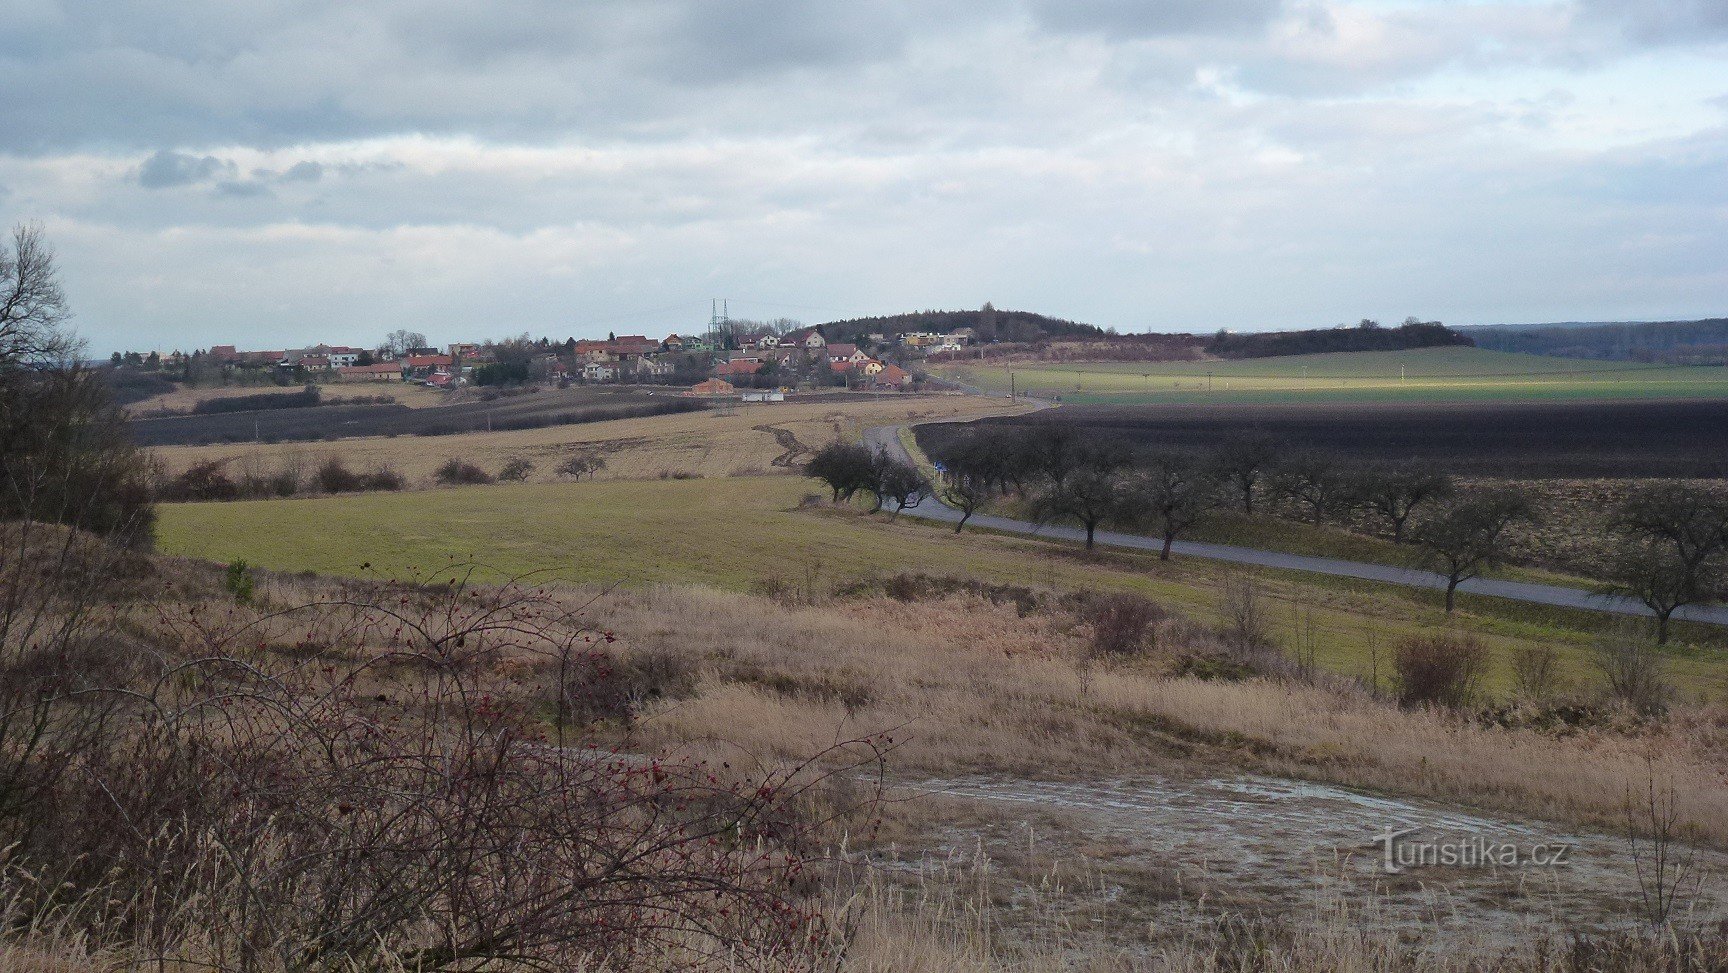 Mokošín - view of the hill and village of Mokošín from the nearby jilník in Tupesy